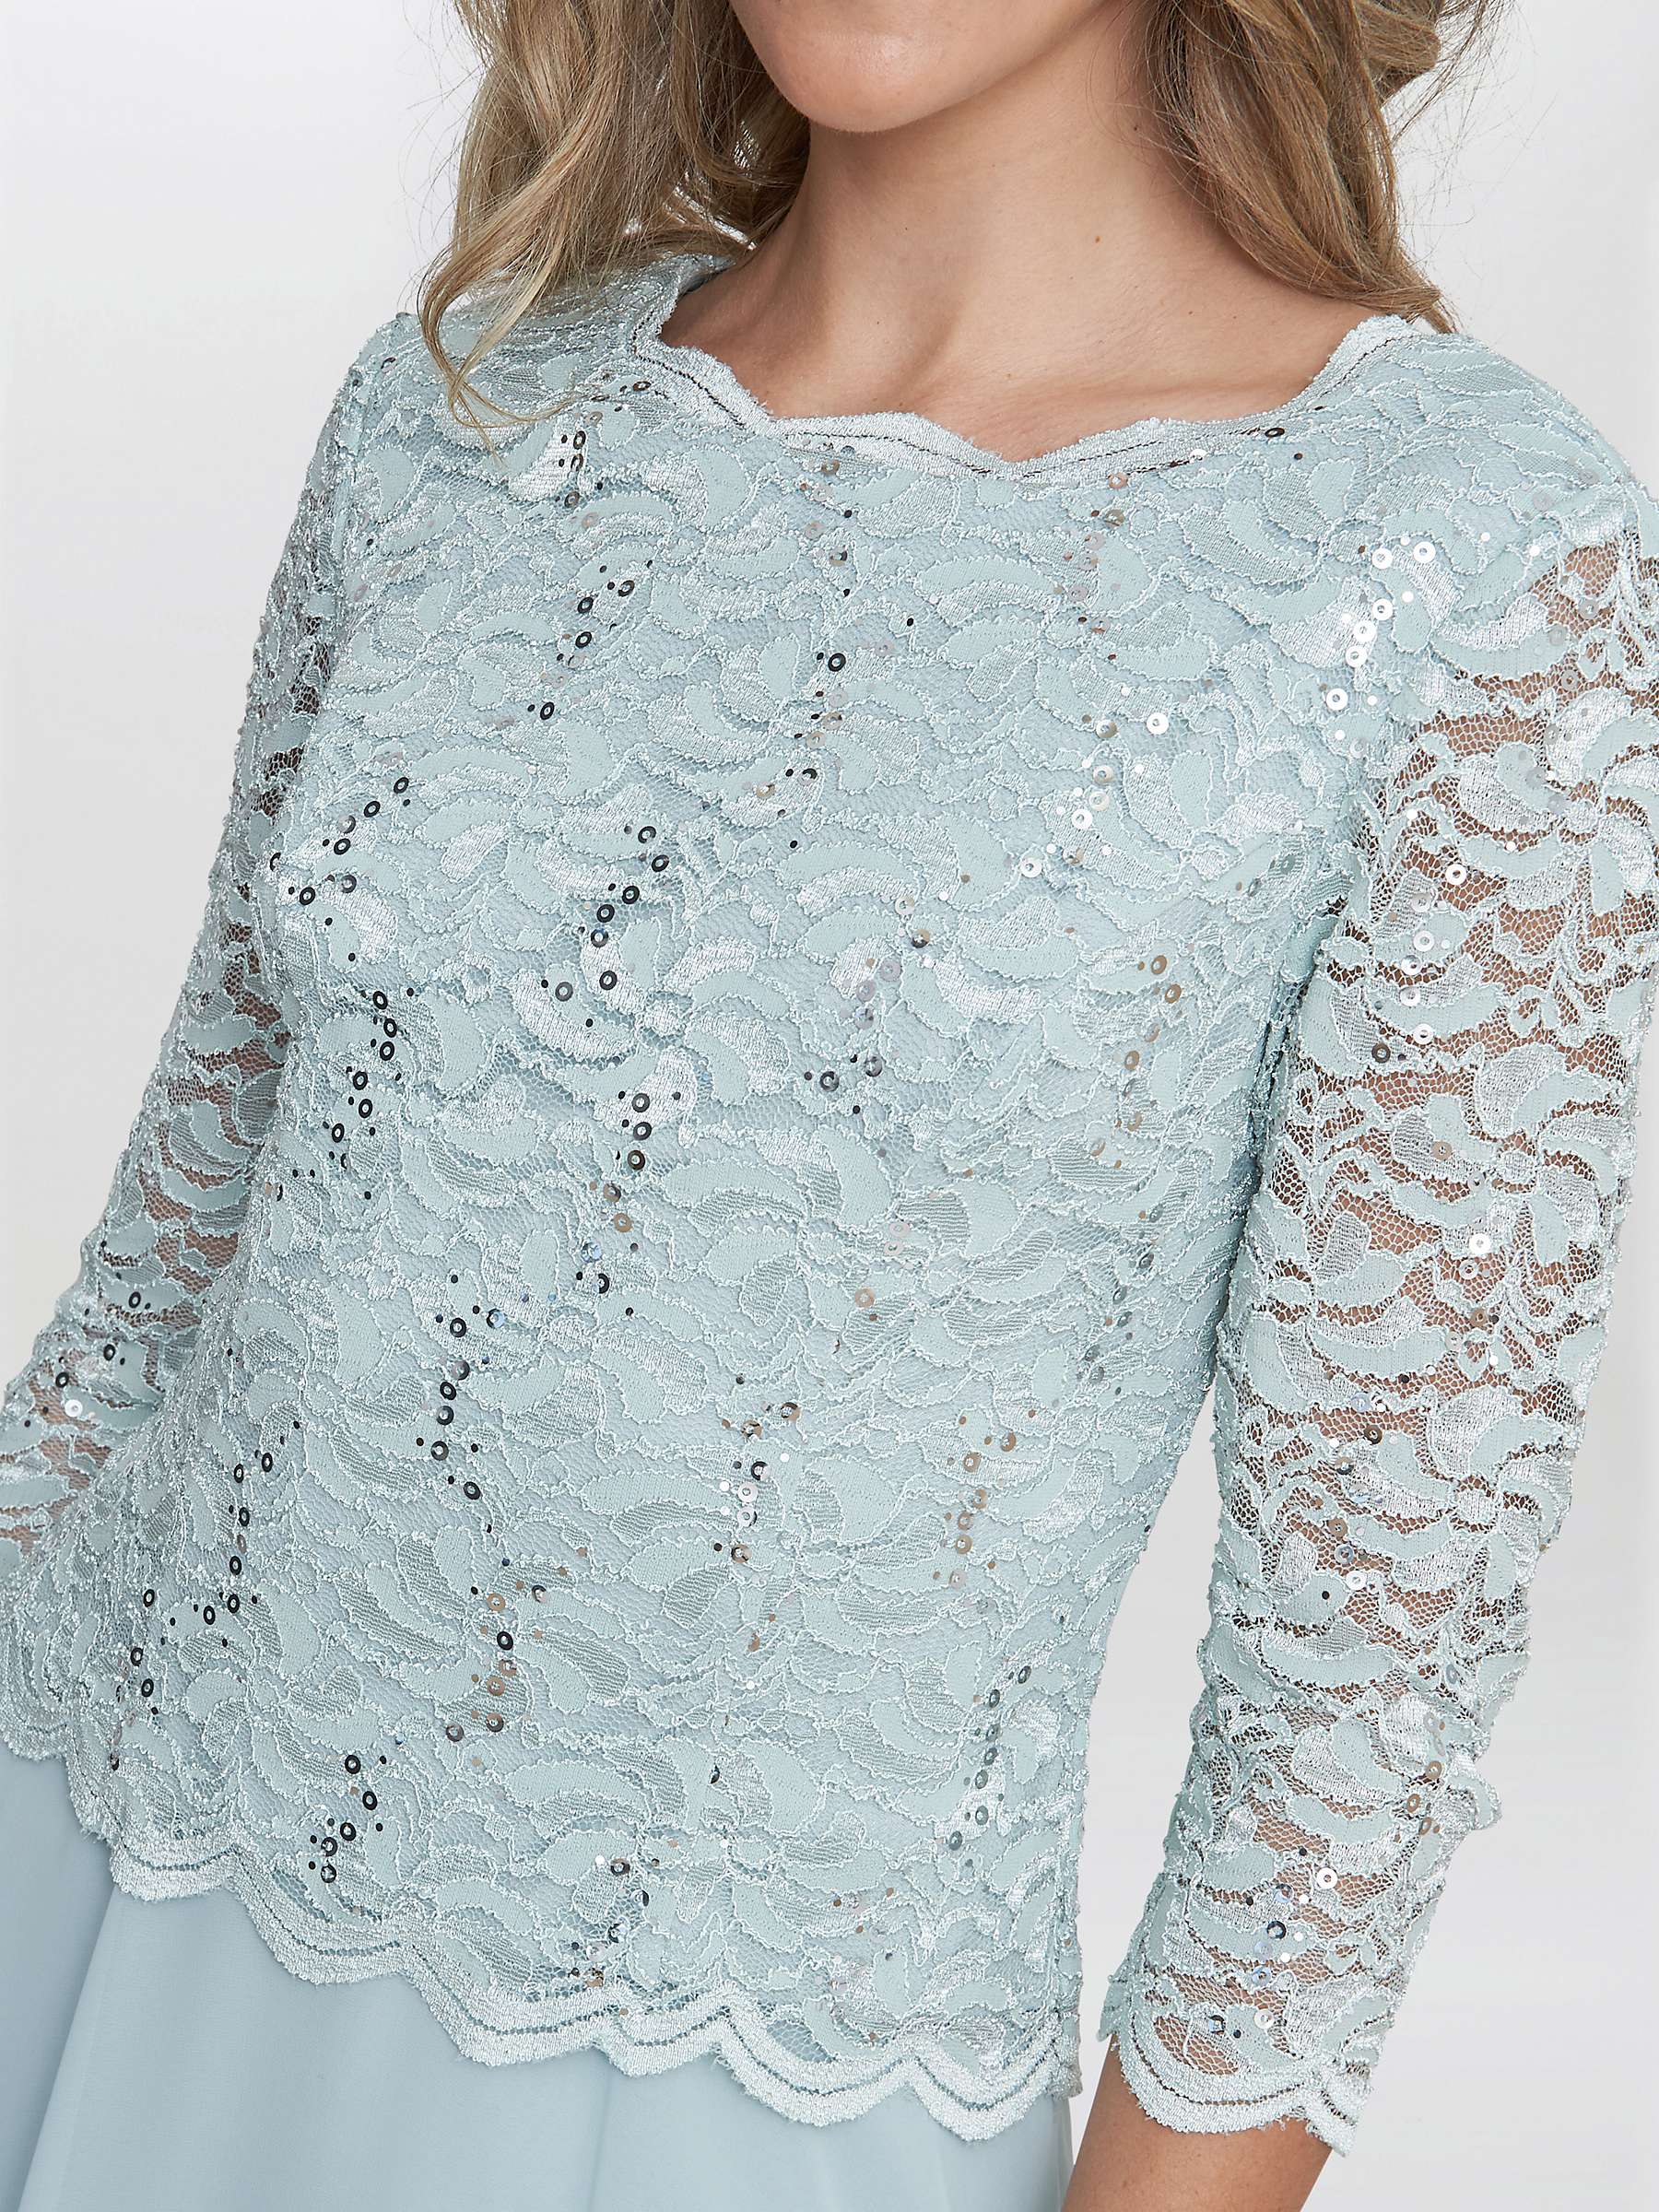 Buy Gina Bacconi Rona Lace and Chiffon Midi Dress, Mint Online at johnlewis.com